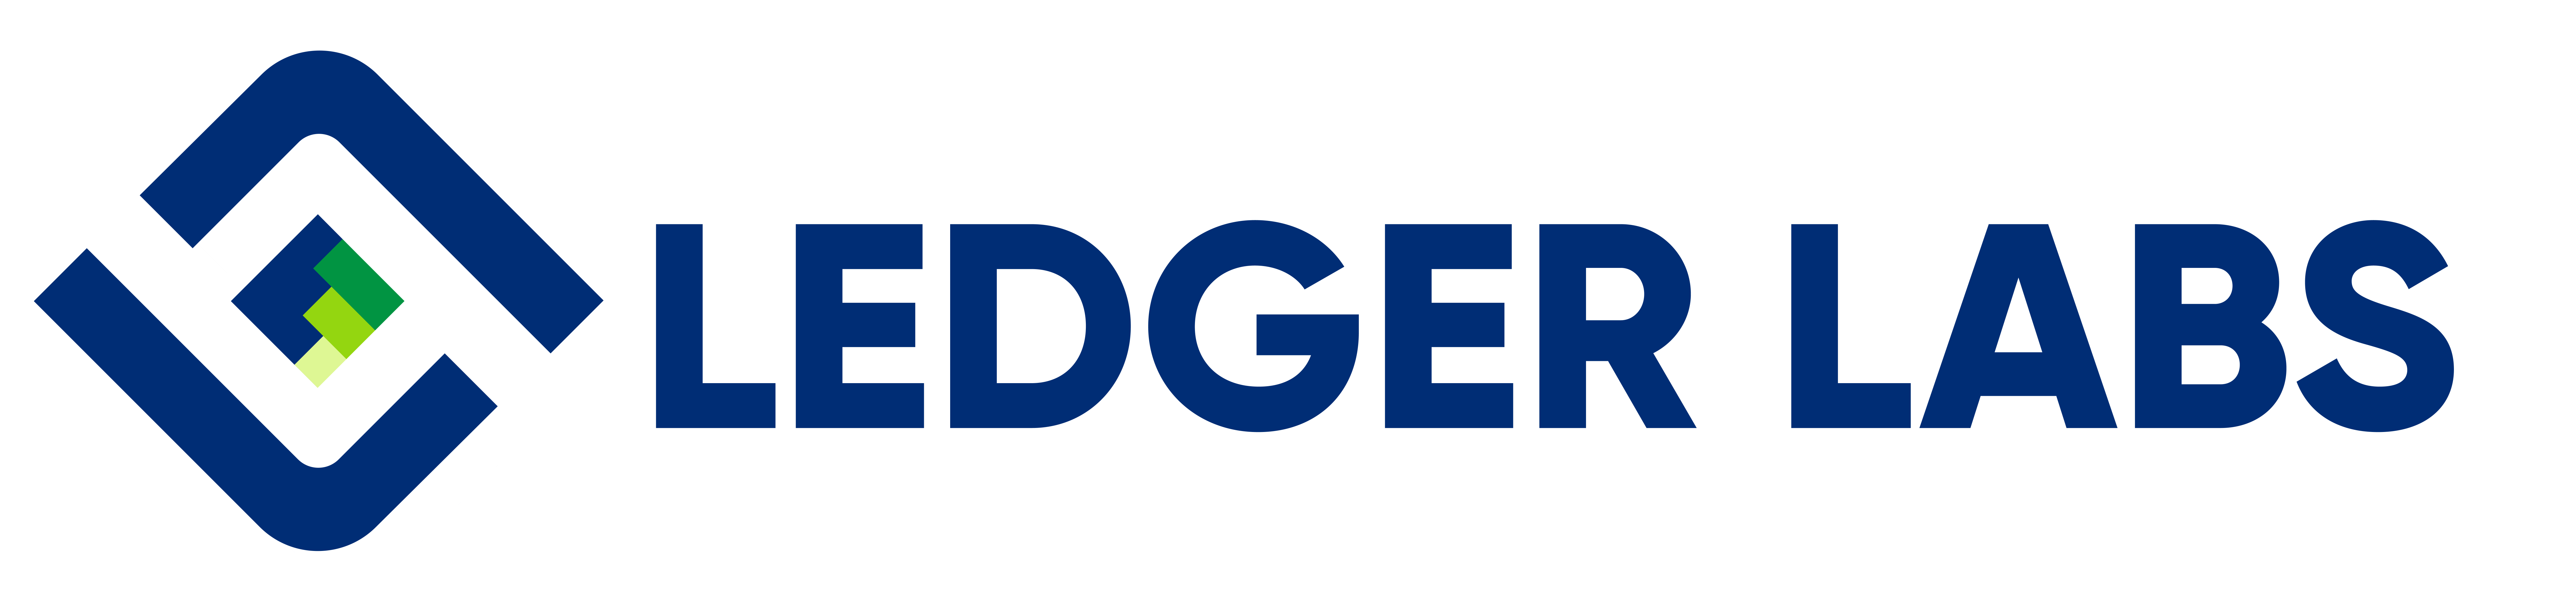 ledgerlabs logo